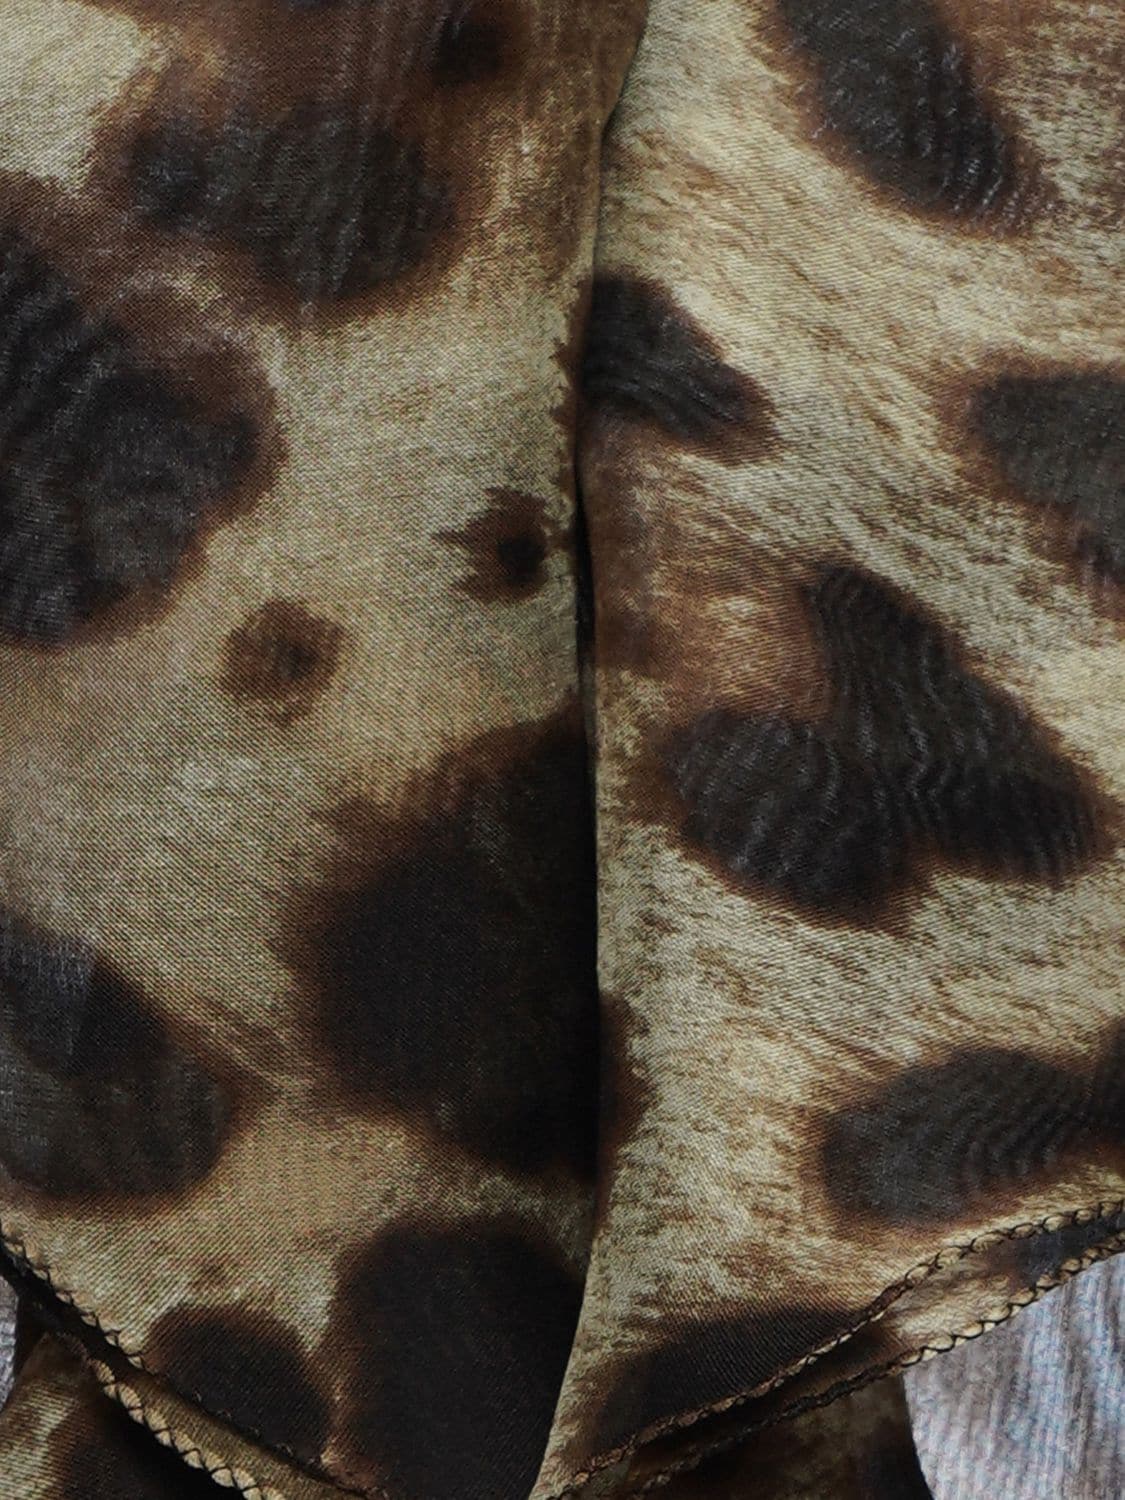 Shop Dolce & Gabbana Leopard Print Ruffled Silk Chiffon Shirt In Multicolor